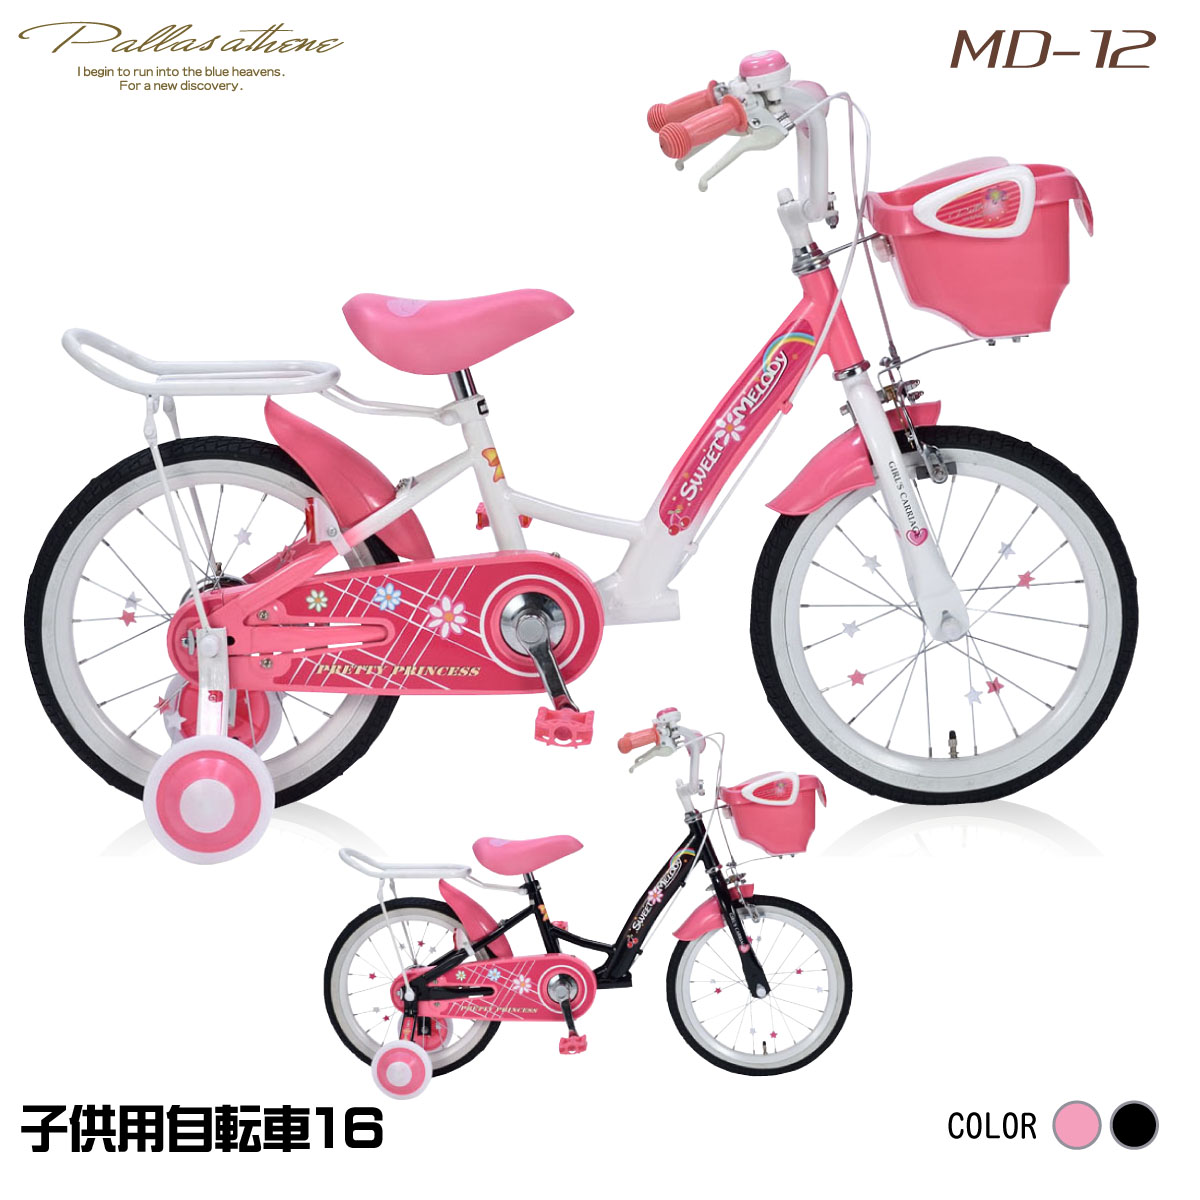 楽天市場 マイパラス Md 12 Pink ピンク 子供用自転車16 補助輪付 イーベストpc 家電館